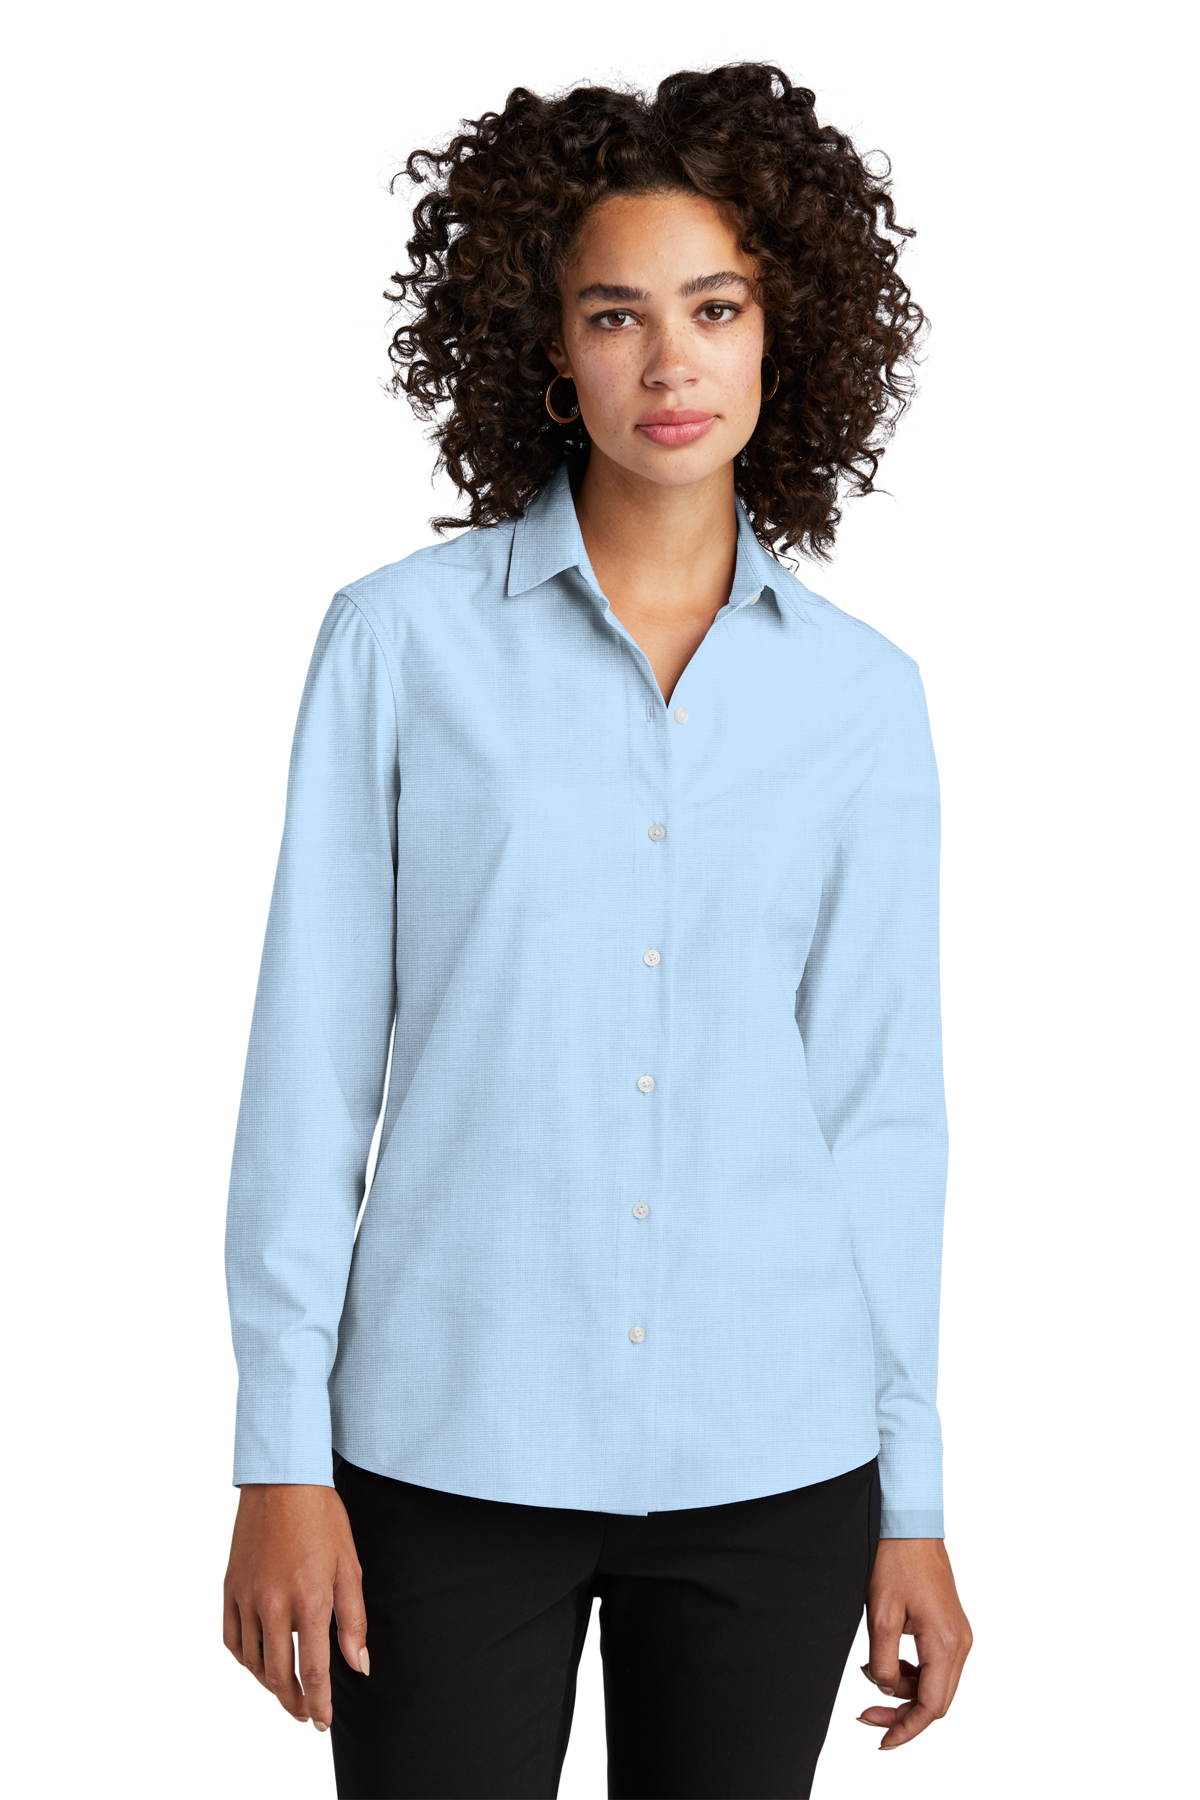 Mercer+Mettle™ MM2001 - Women's Long Sleeve Stretch Woven Shirt